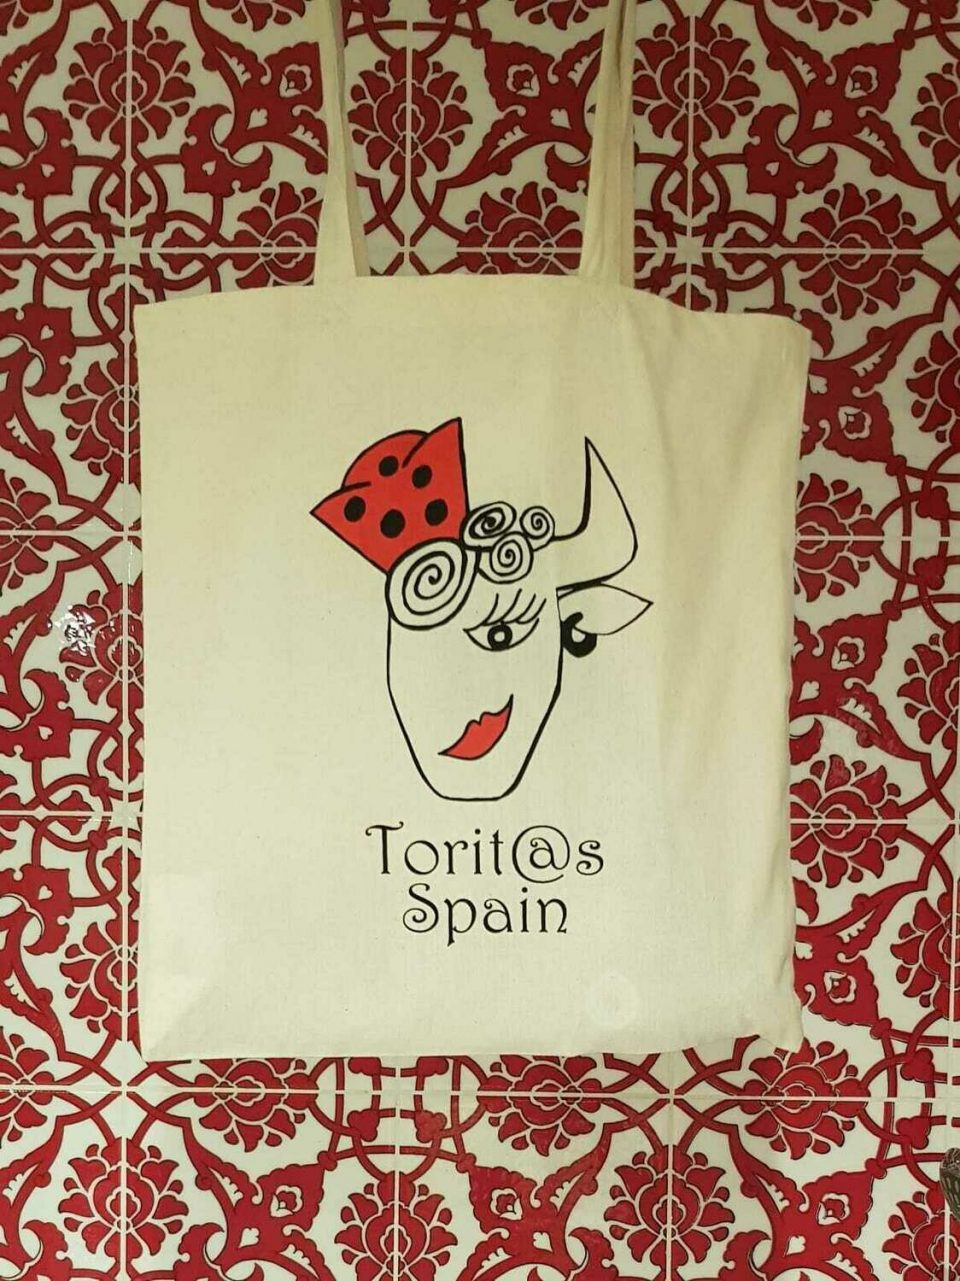 Tote-Bag Flamenca (Comercio Justo)